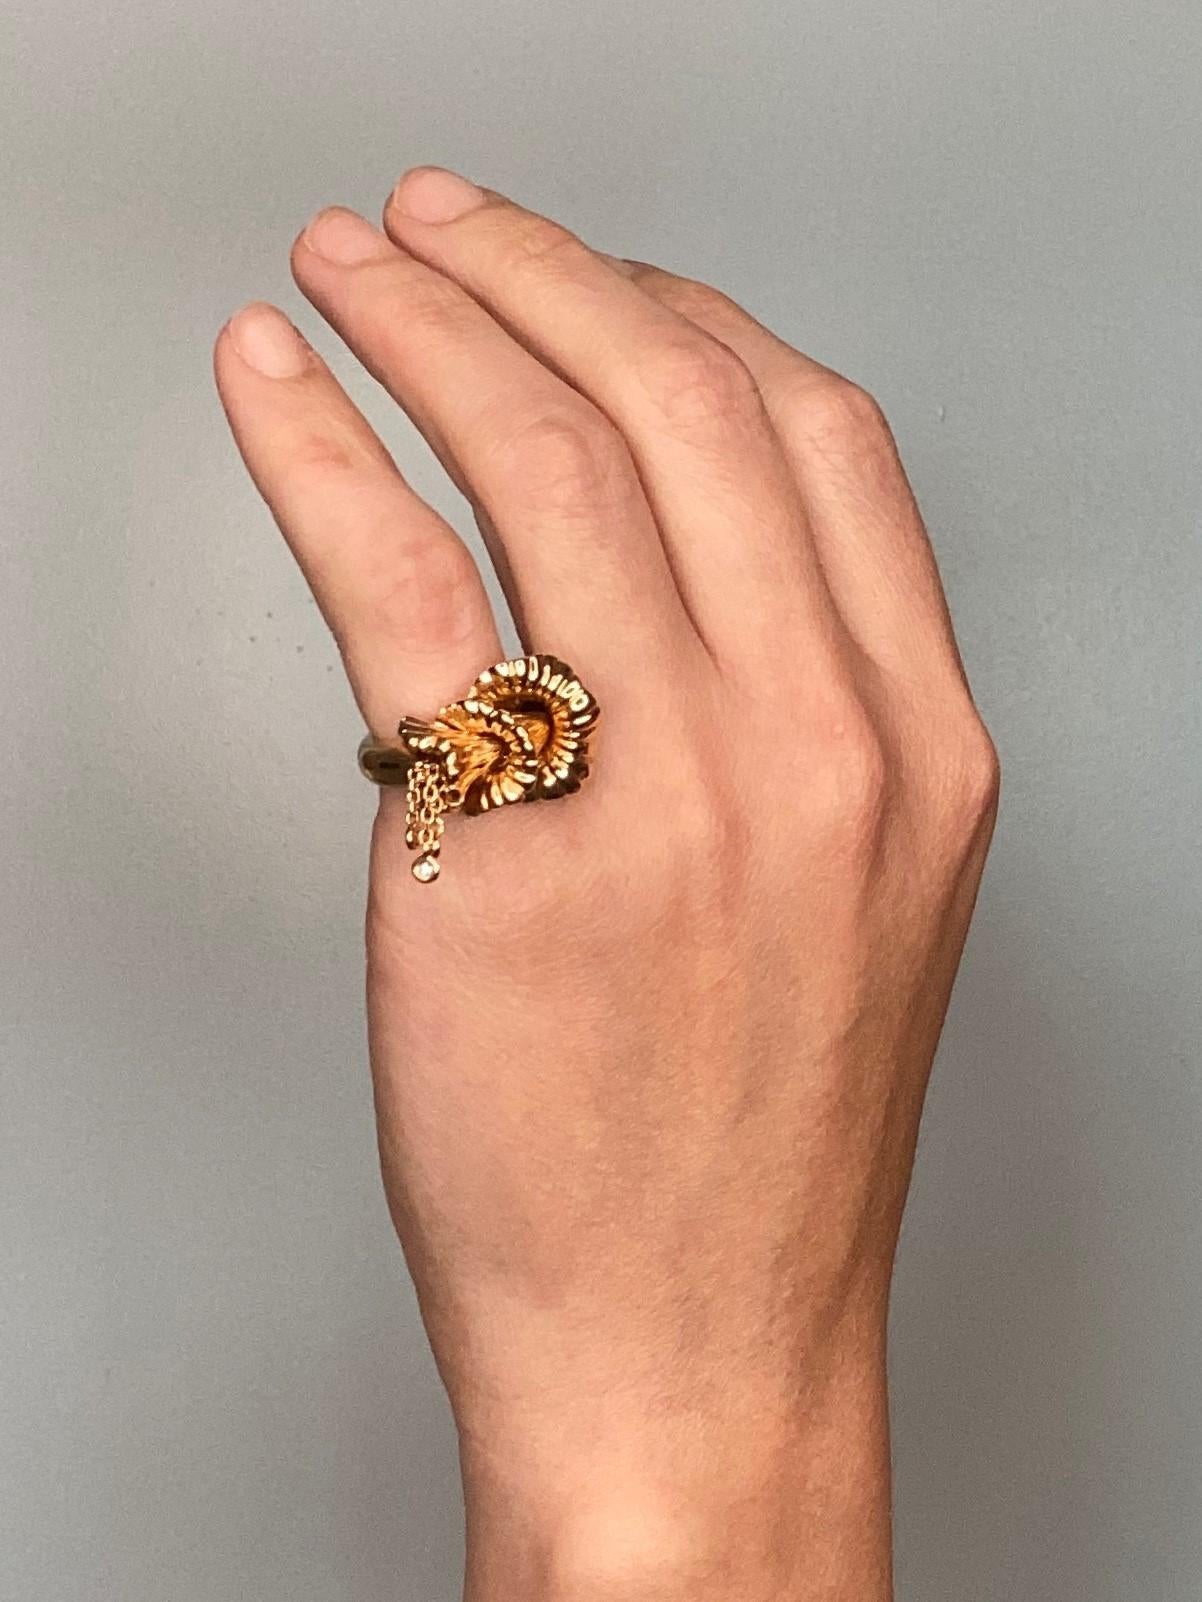 Exquises confidences Ring entworfen von Boucheron.

Ein modernes und ultimatives Stück, kreiert in Paris, Frankreich vom Schmuckhaus Boucheron. Dieser wunderschöne und seltene skulpturale Ring ist Teil der Collection'S Exquises confidences und wurde